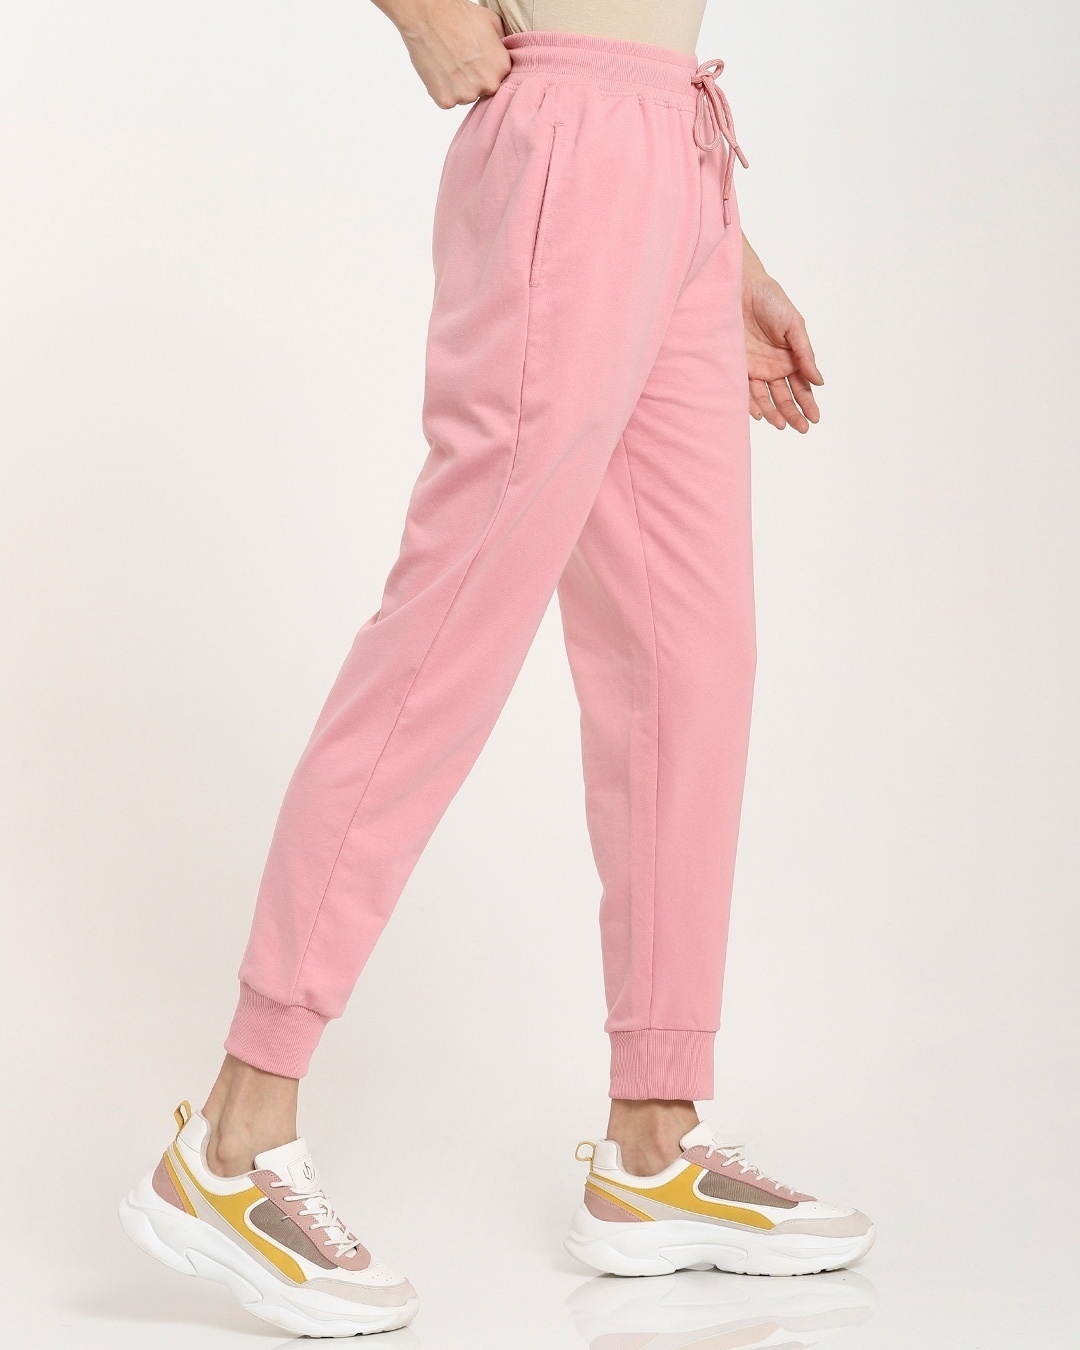 Buy Women's Solid Pink Joggers for Women pink Online at Bewakoof